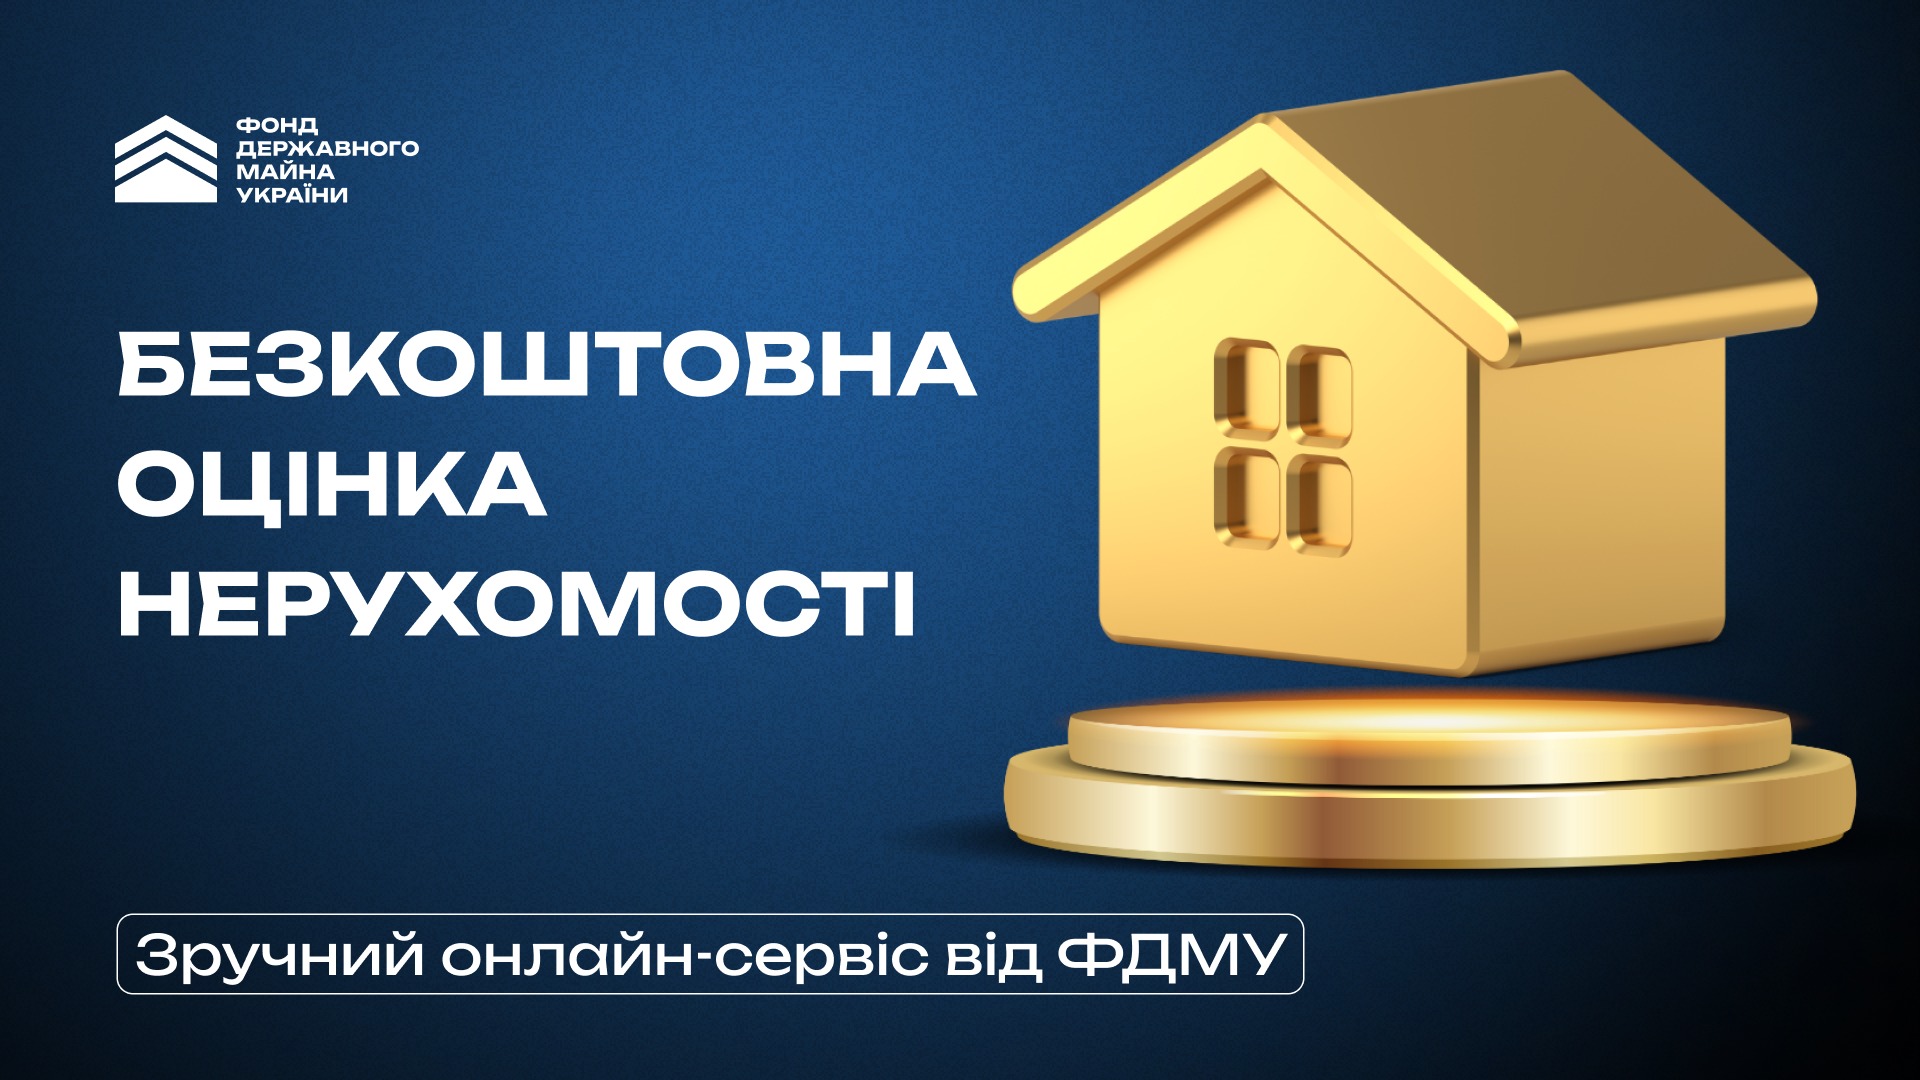 Безкоштовна оцінка нерухомості: в Україні з’явився новий сервіс